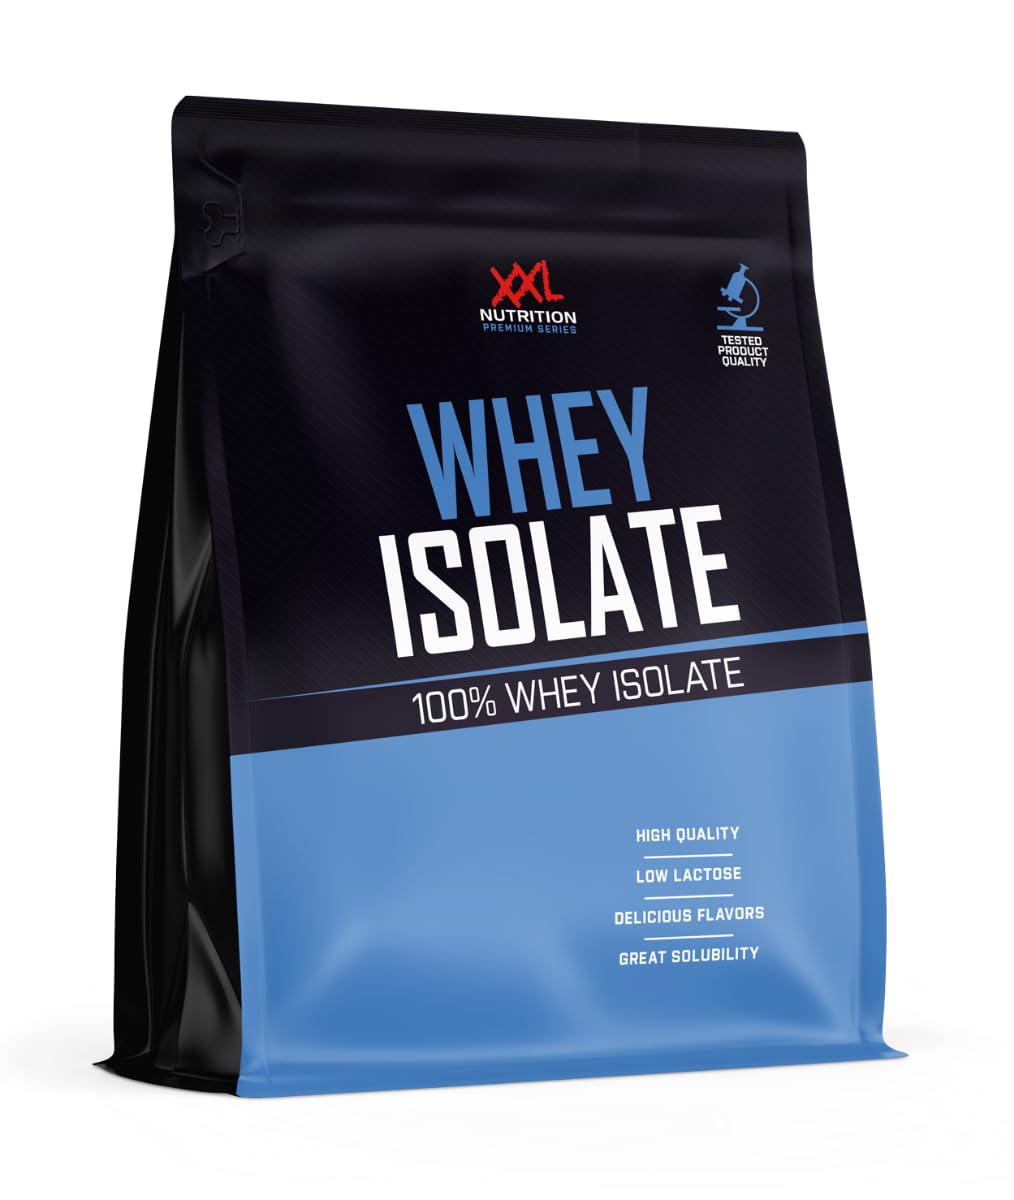 XXL Nutrition - Whey Isolate - Höchste Qualität Molkenprotein-Isolat, nur 0,8% Laktose - Eiweiss Pulver Isolat - 1000 Gramm - Kokos